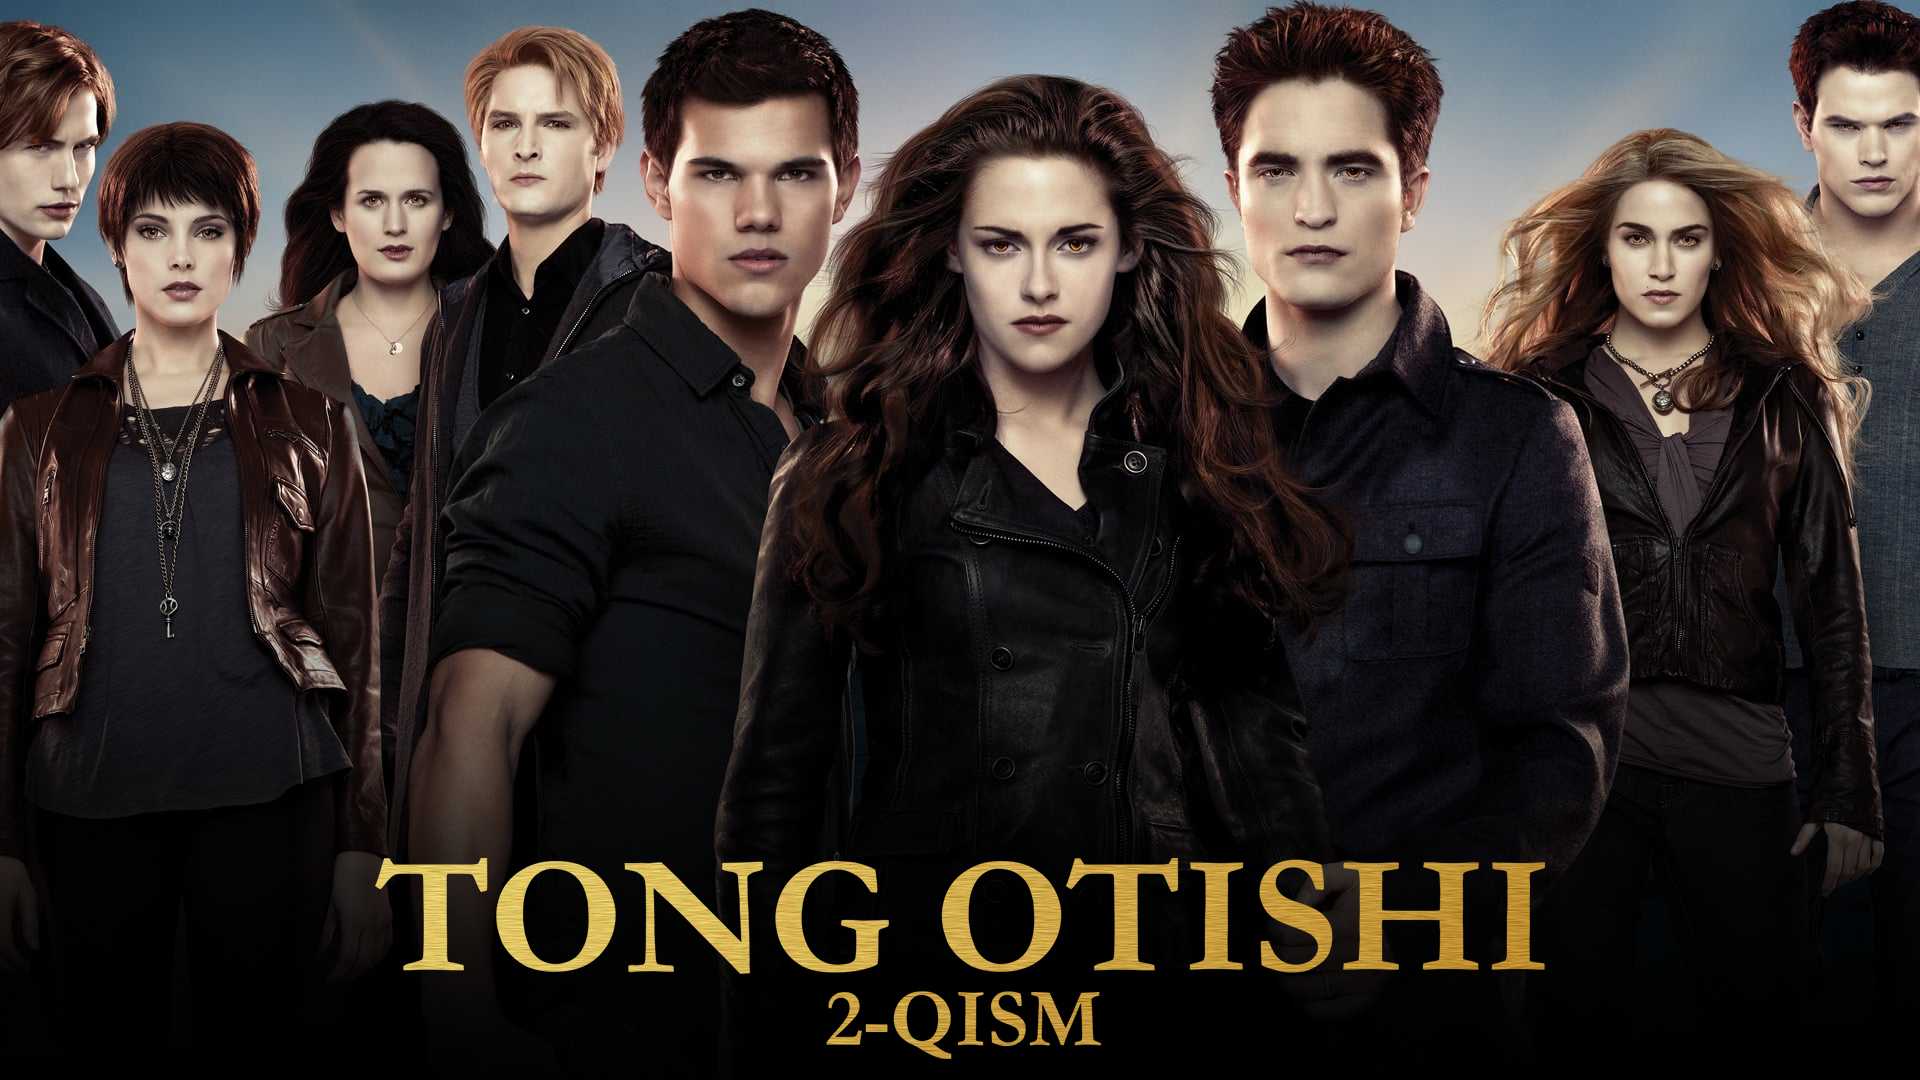 Tong otishi 2-qism